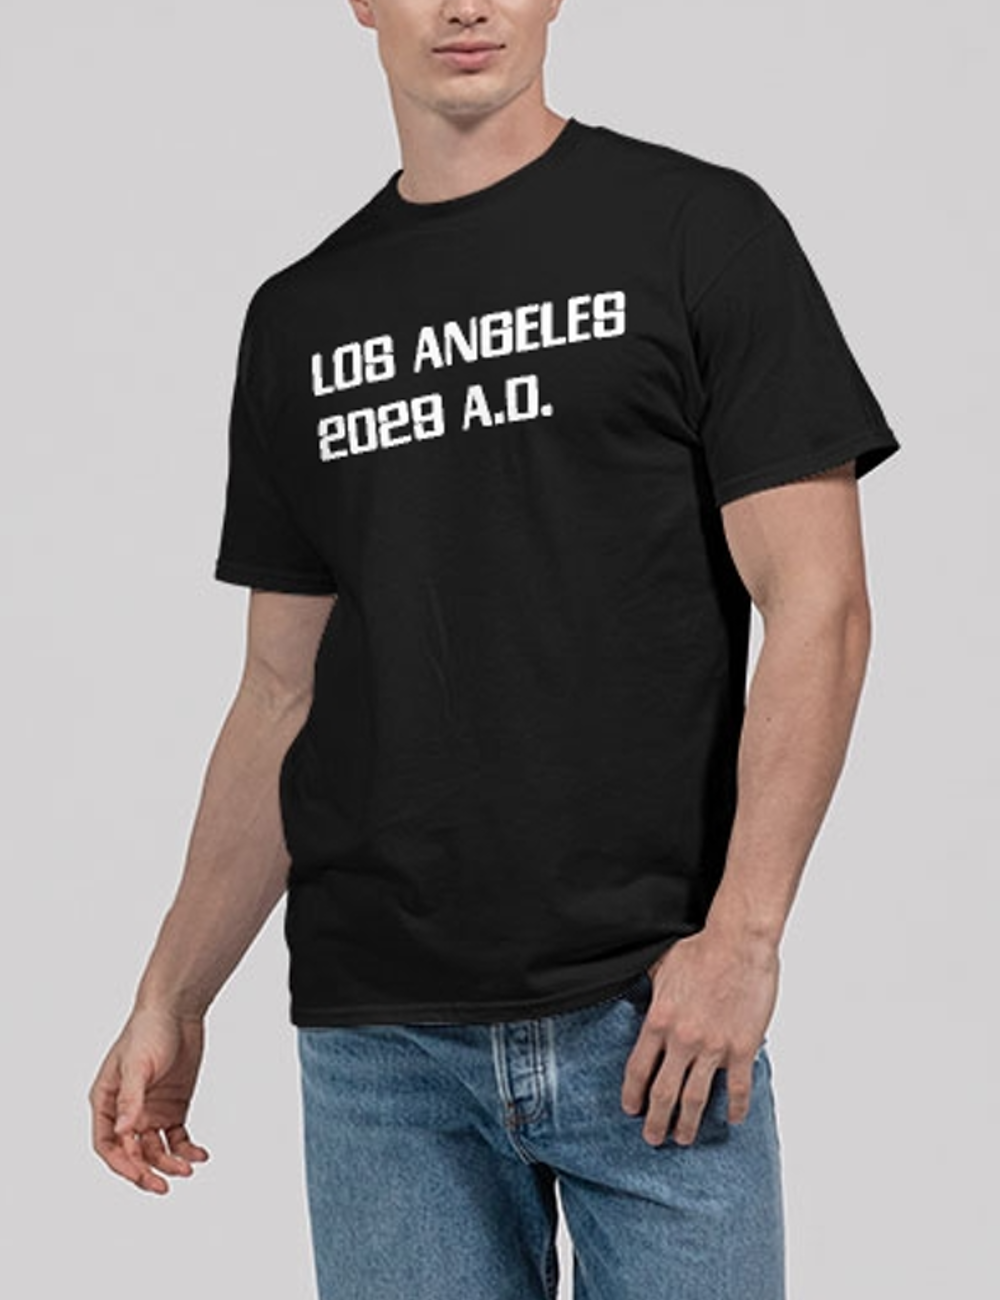 Los Angeles 2029 A.D. Men's Classic T-Shirt OniTakai